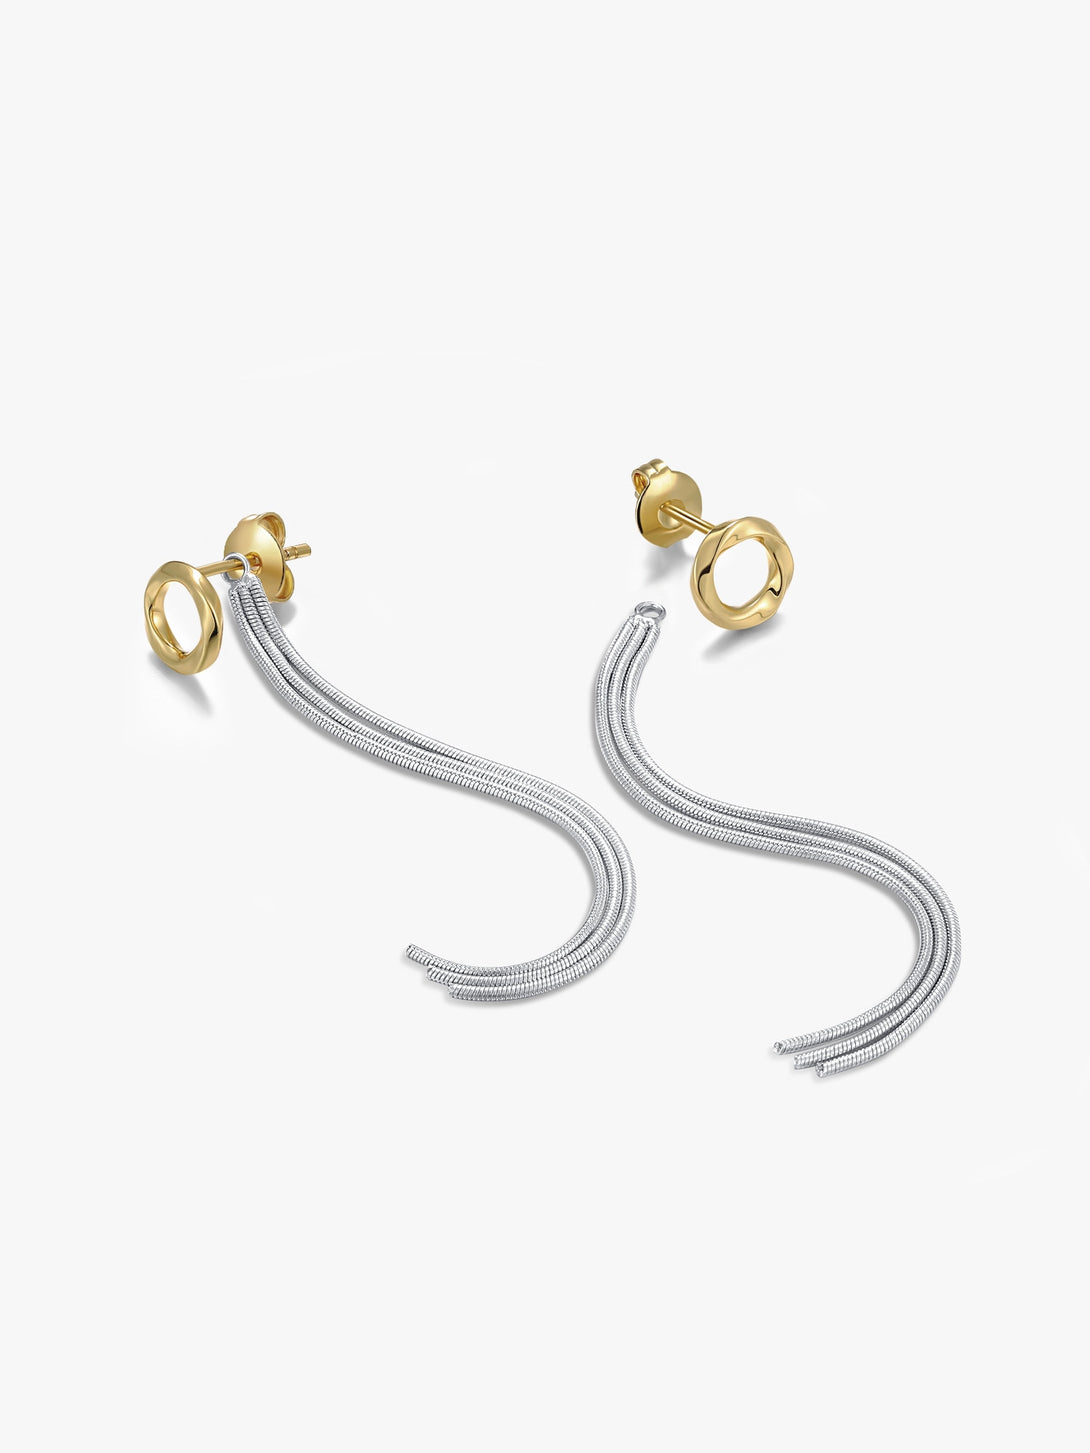 Mobius Strip Unisex Drop Earrings - OOTDY